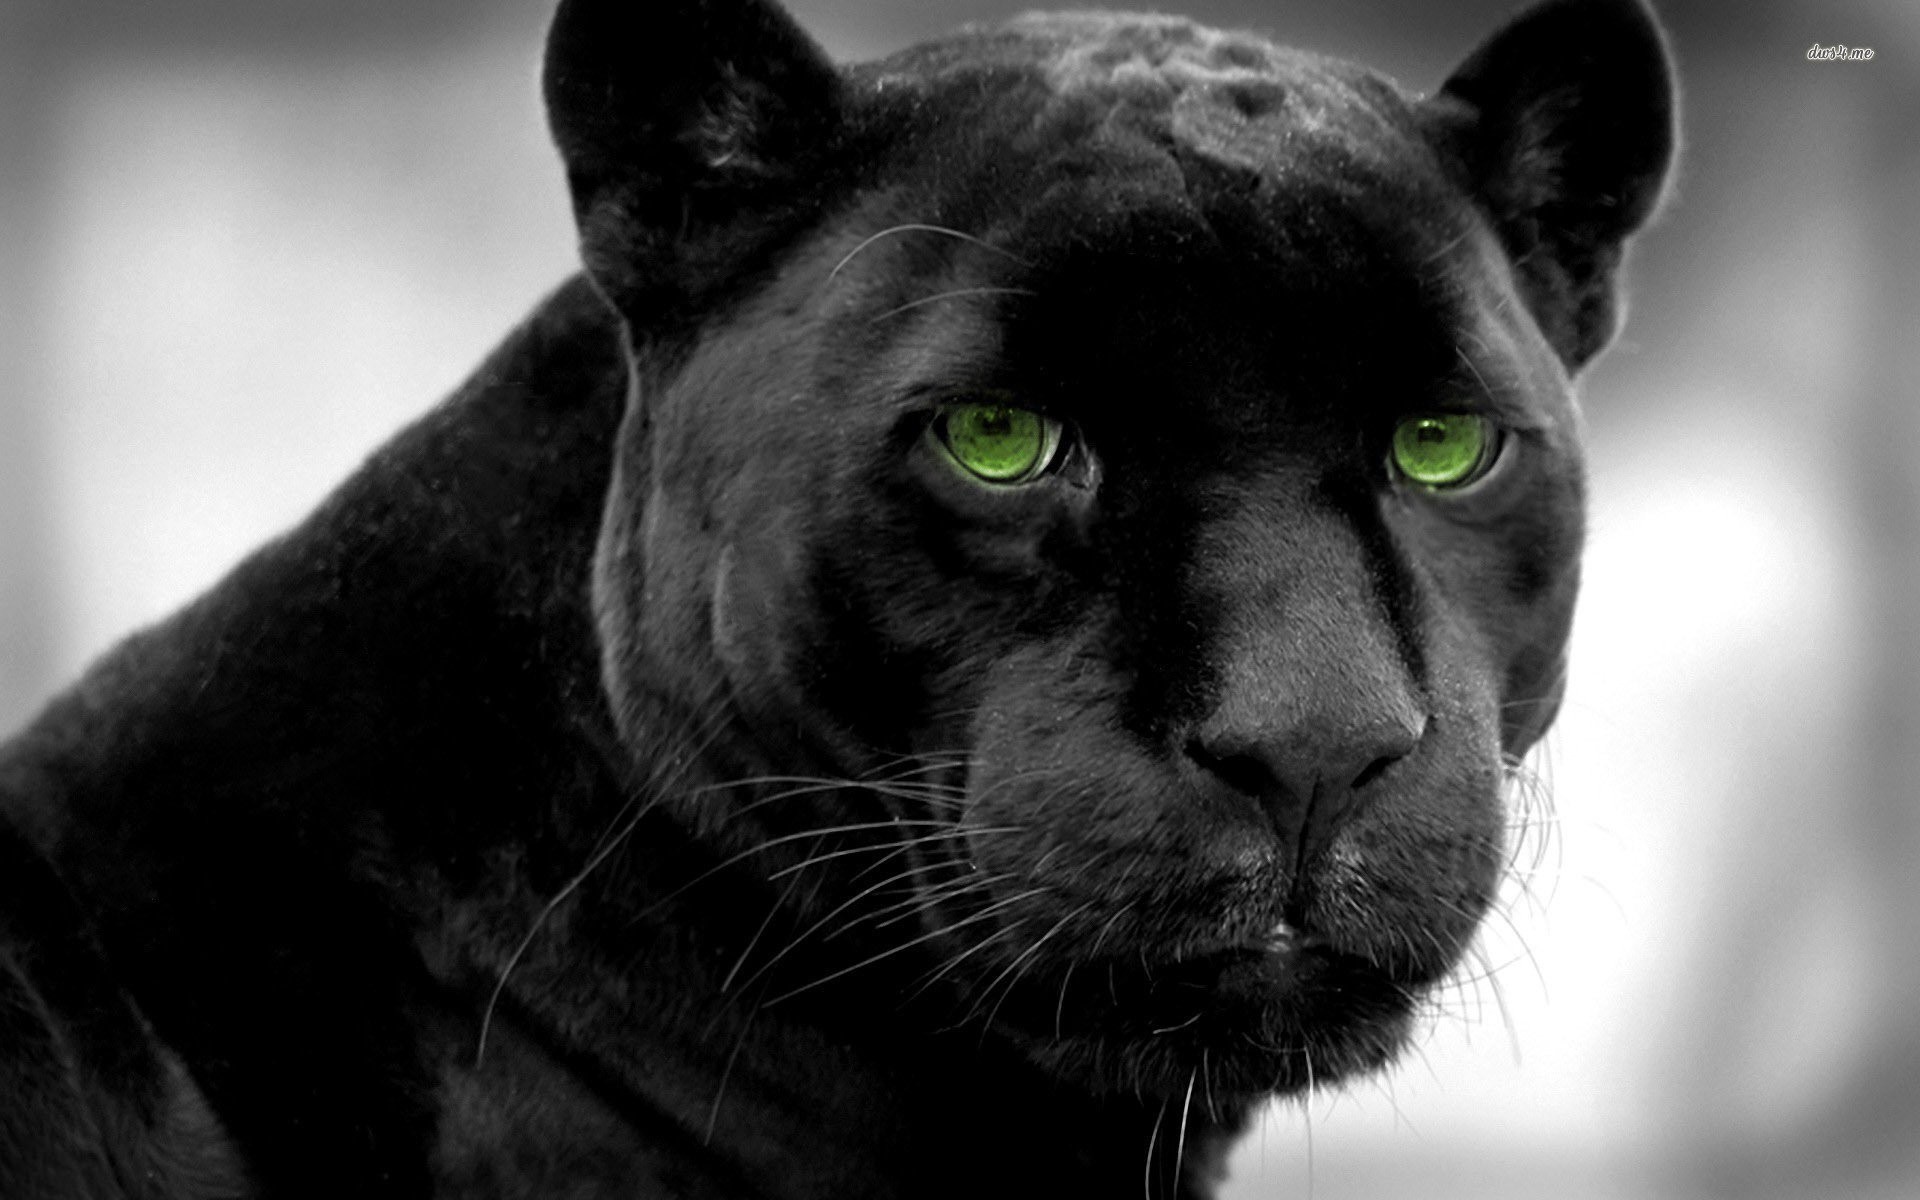  Black  Panther  wallpaper    Download  free  amazing HD 